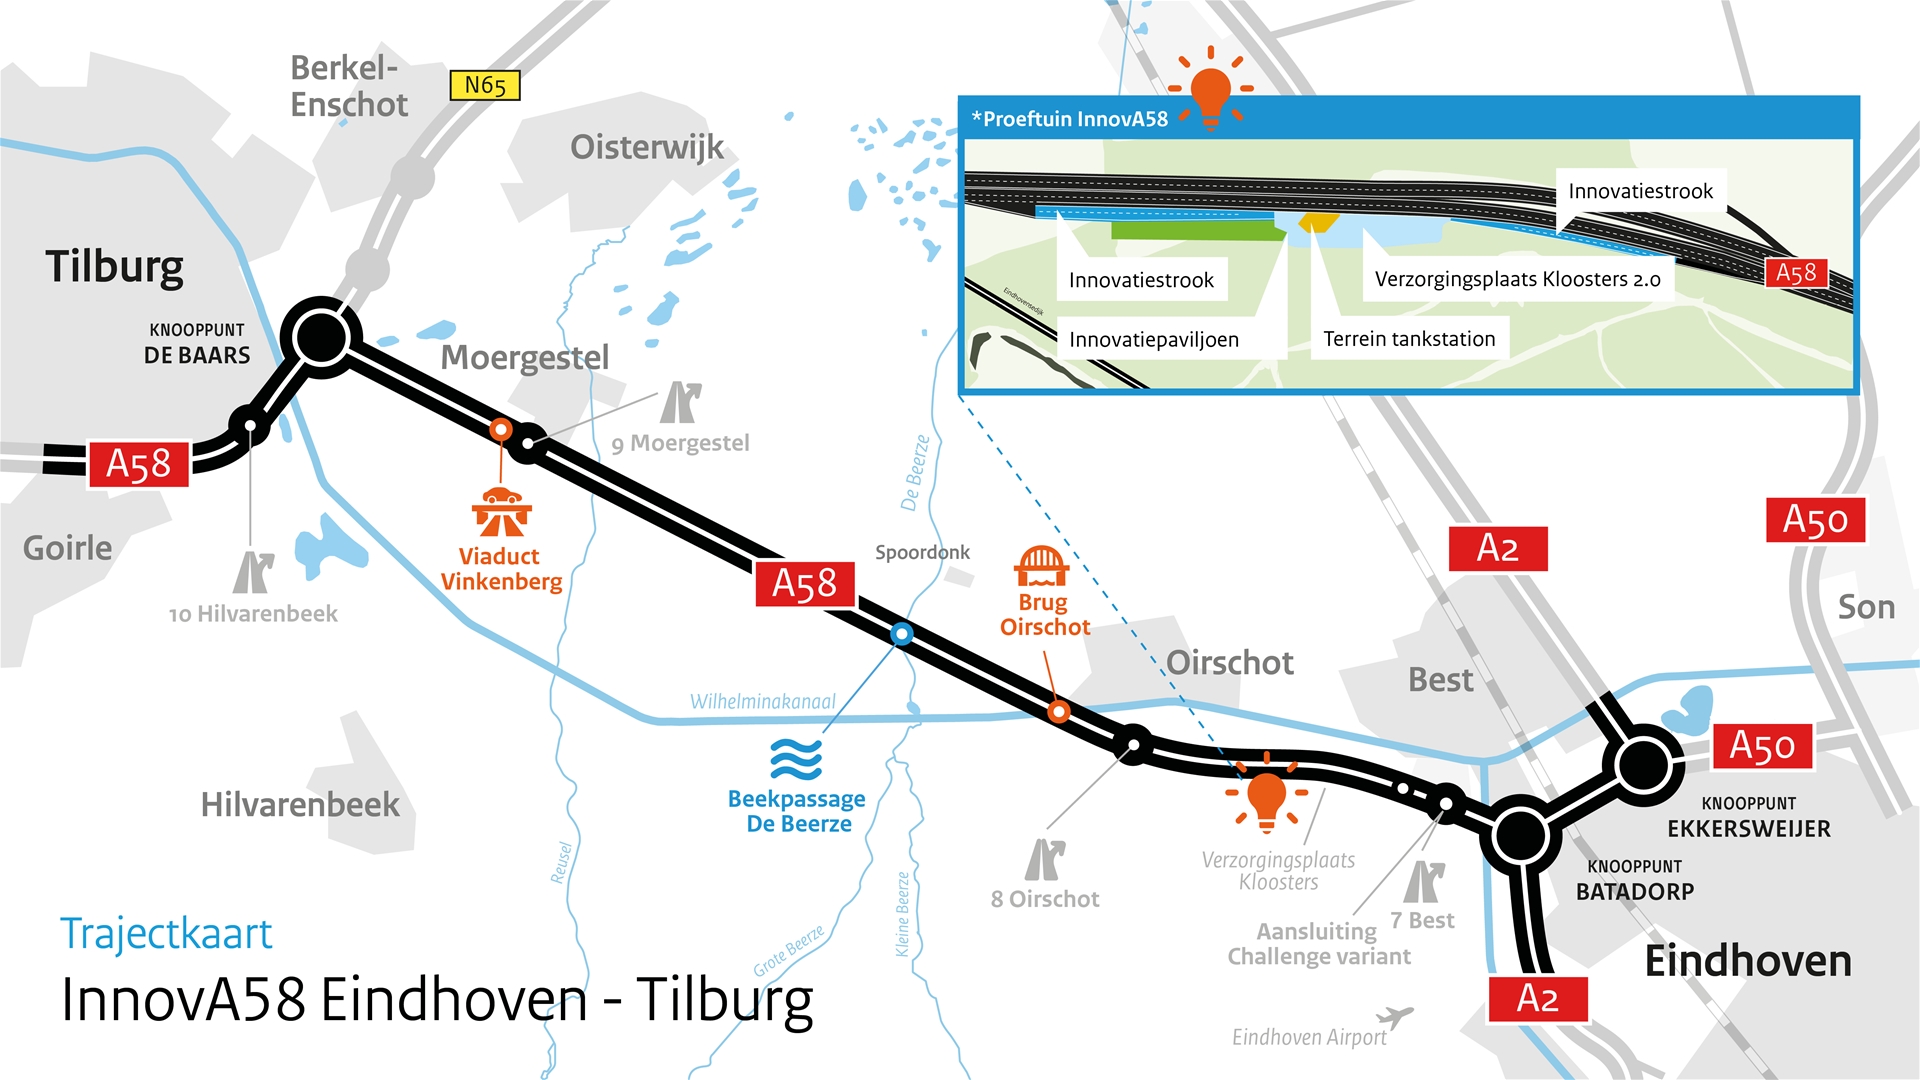 kaart van de A58 tussen Eondhoven en Tilburg met inzet van parkeerplaats Kloosters bij OIrschot